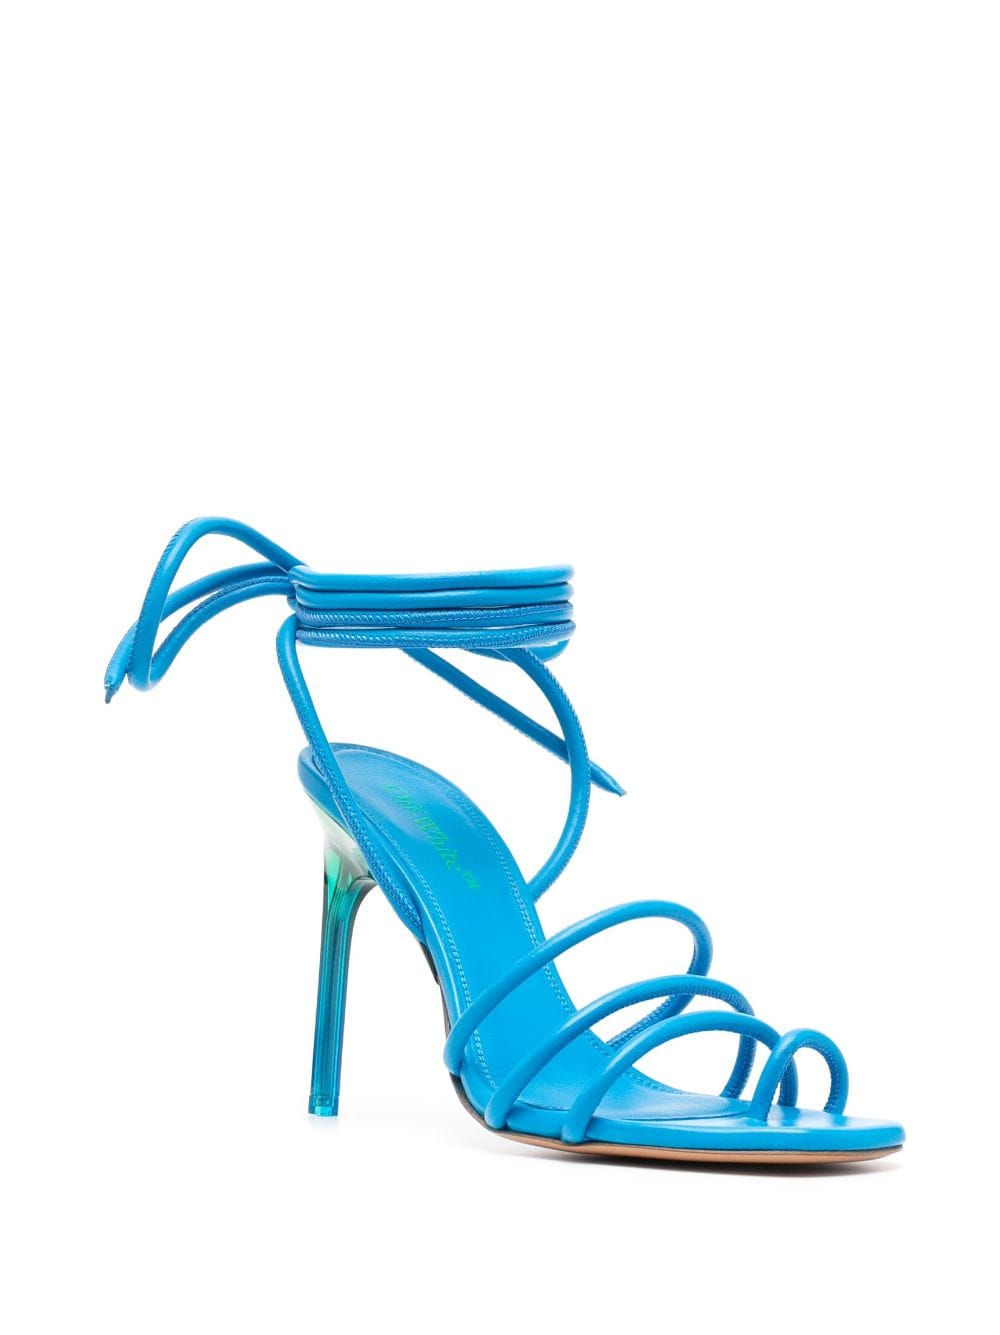 Off-White Plexi sandalen met enkelbandje - Blauw